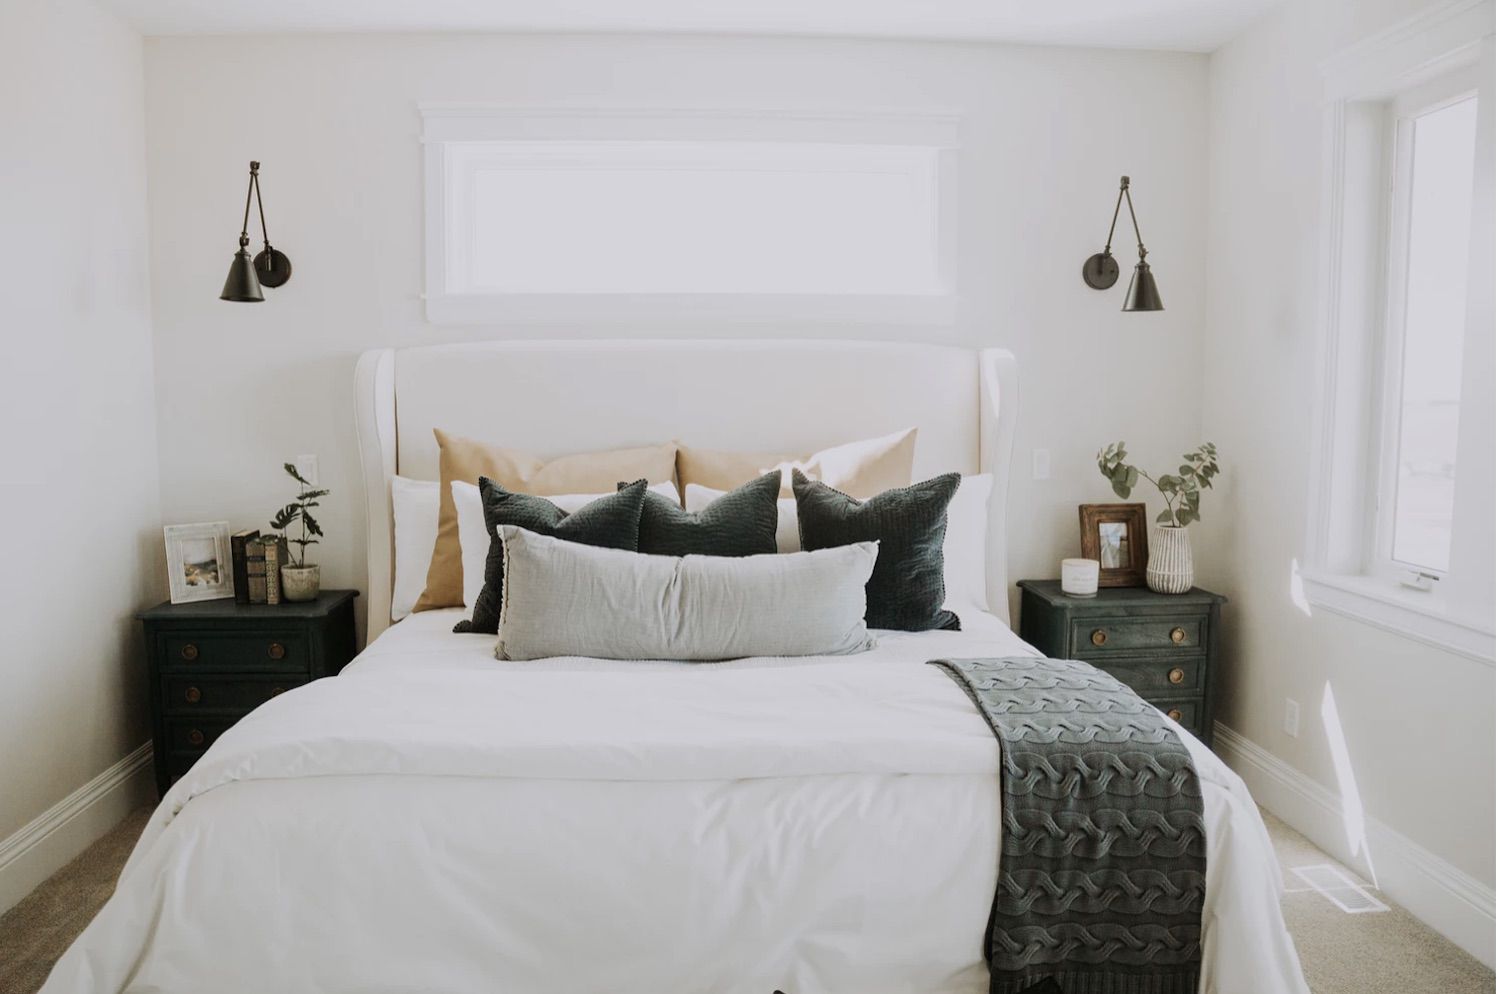 dormitorio moderno blanco con mesas de acento rústico de granja, apliques de metal